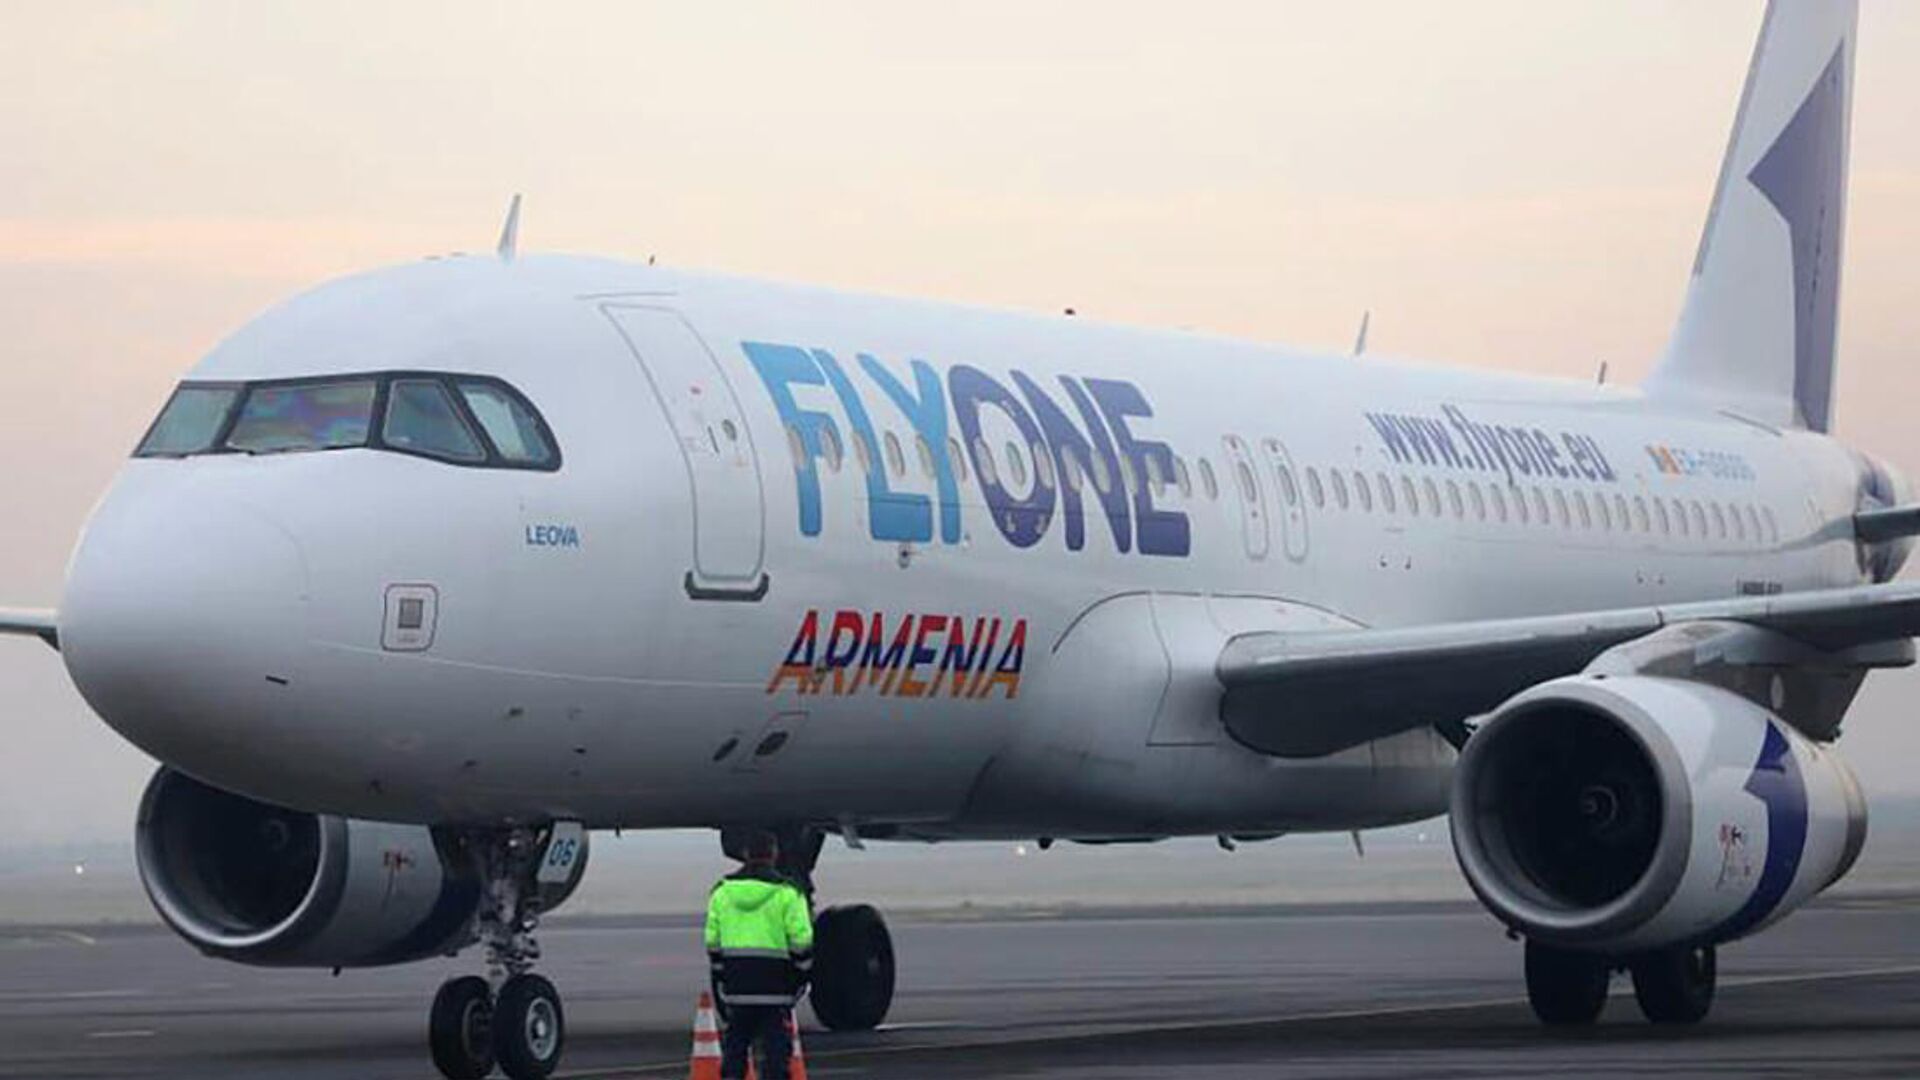 ՌԴ օդային տարածքում սահմանափակումների պատճառով Երևան-Մոսկվա-Երևան չվերթերի տևողությունը փոփոխվել է. FlyOne Armenia